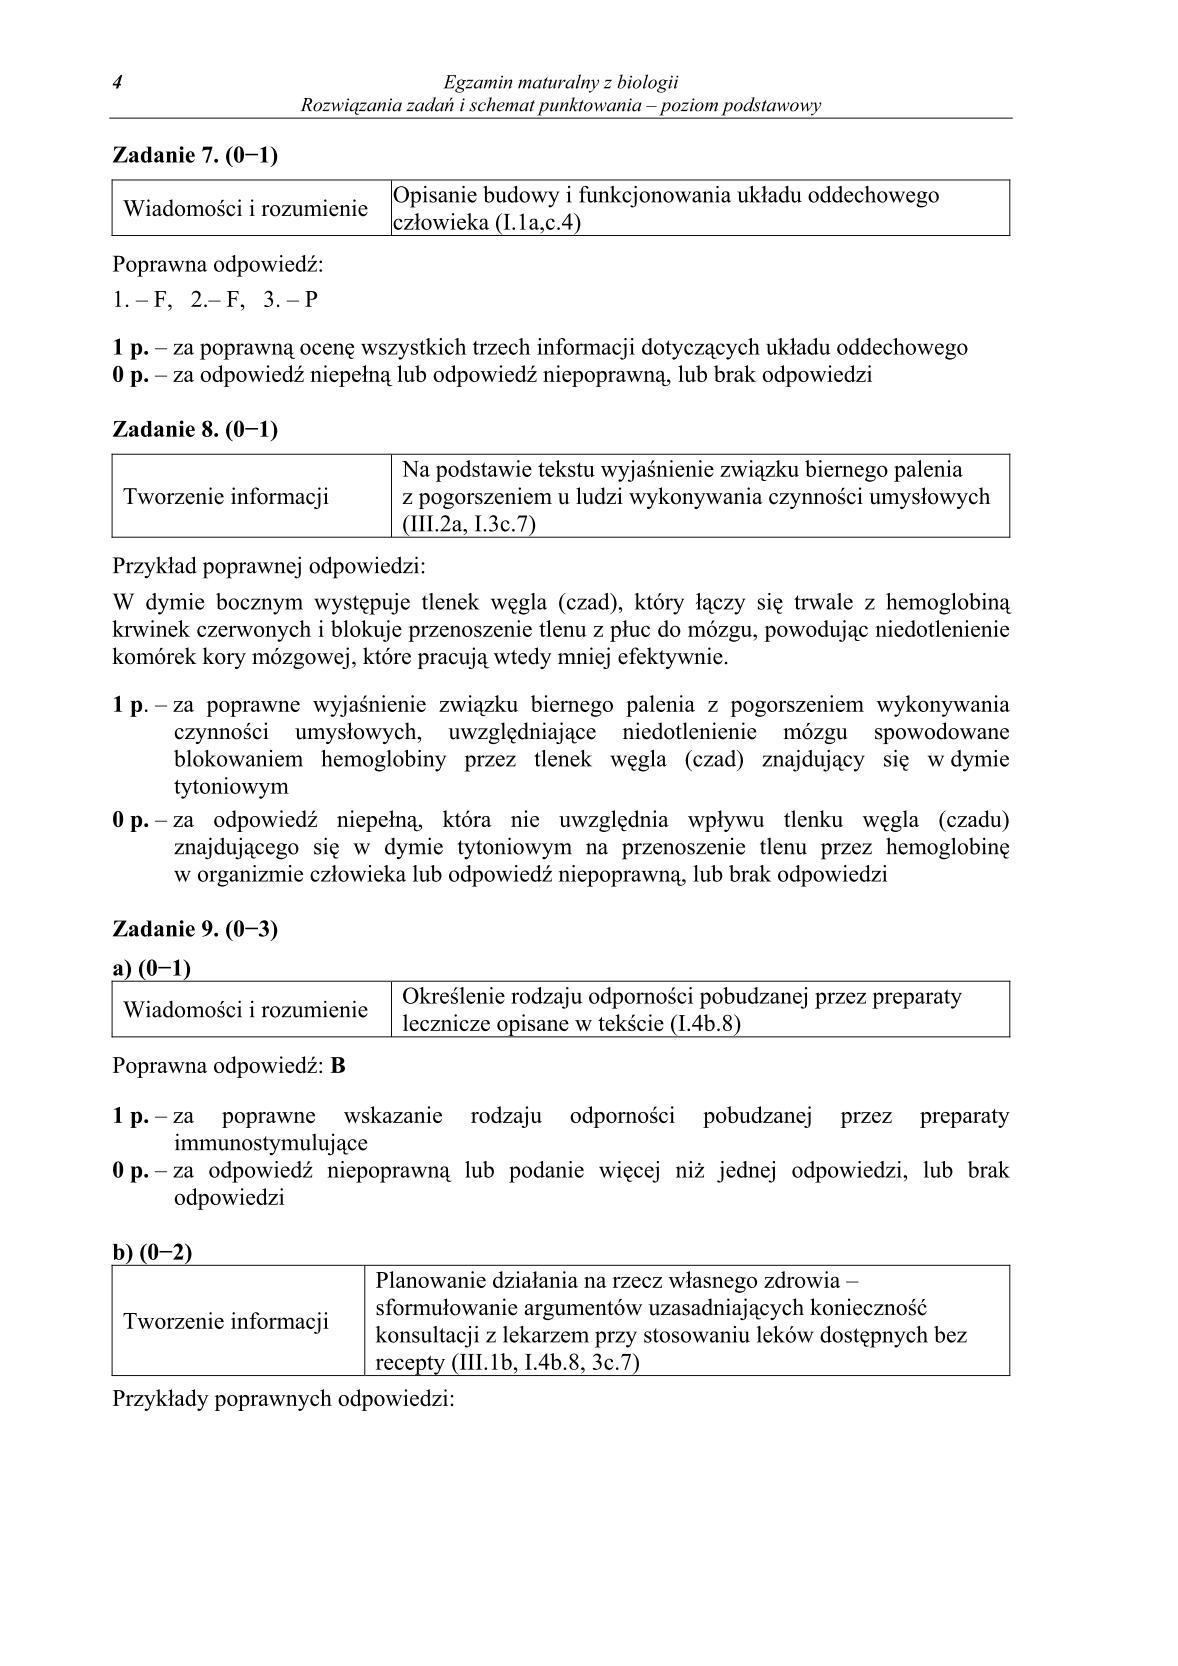 odpowiedzi-biologia-poziom-podstawowy-matura-2014-str.4